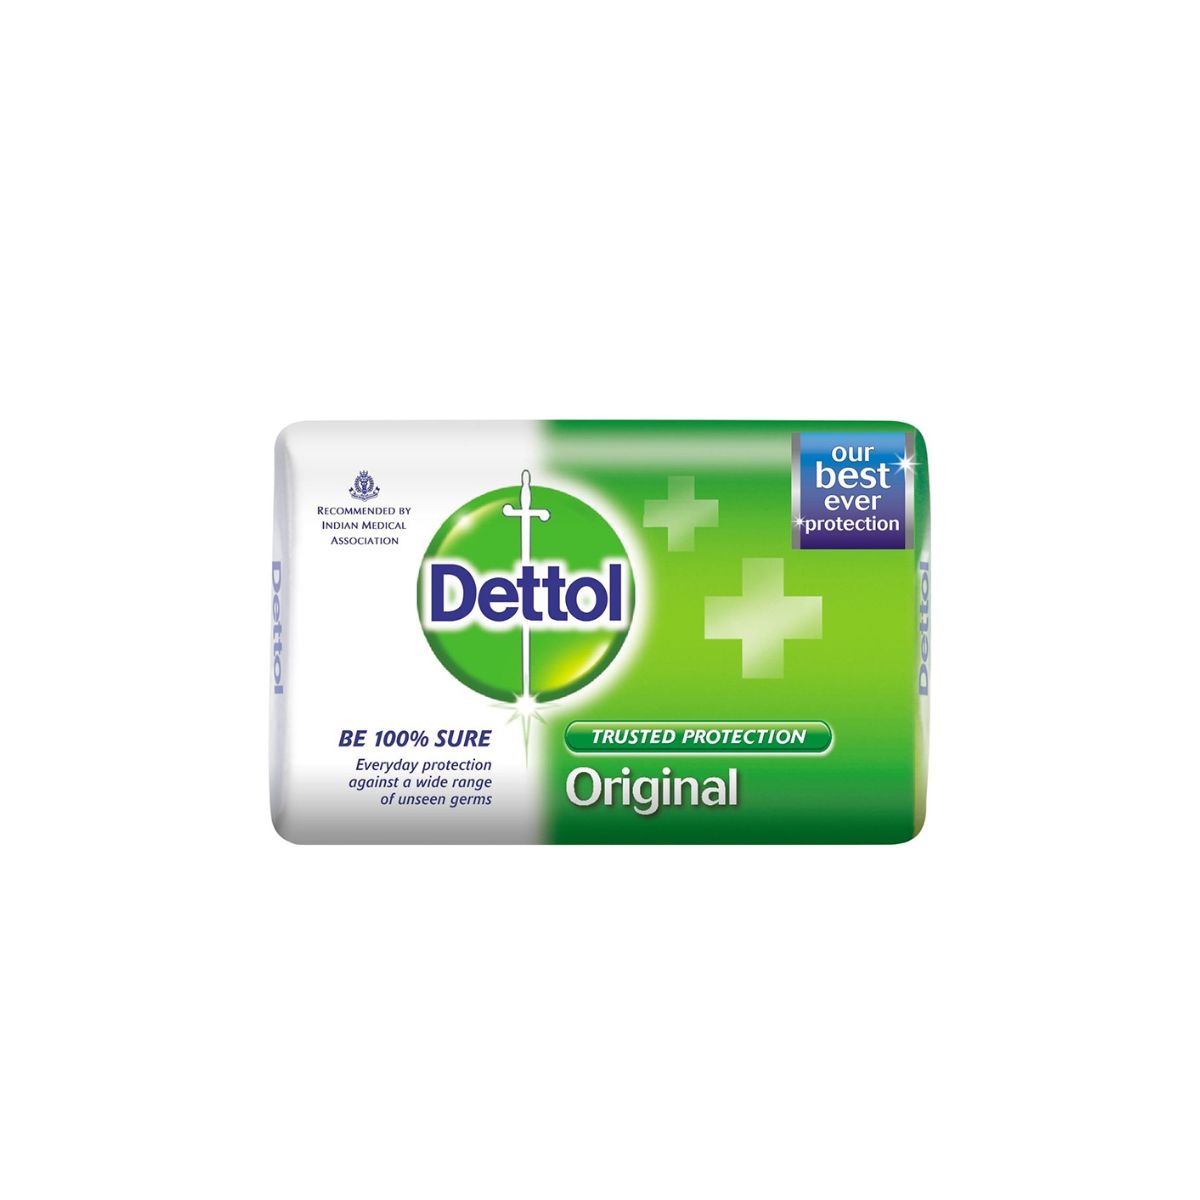 Dettol Original Soap - 40g